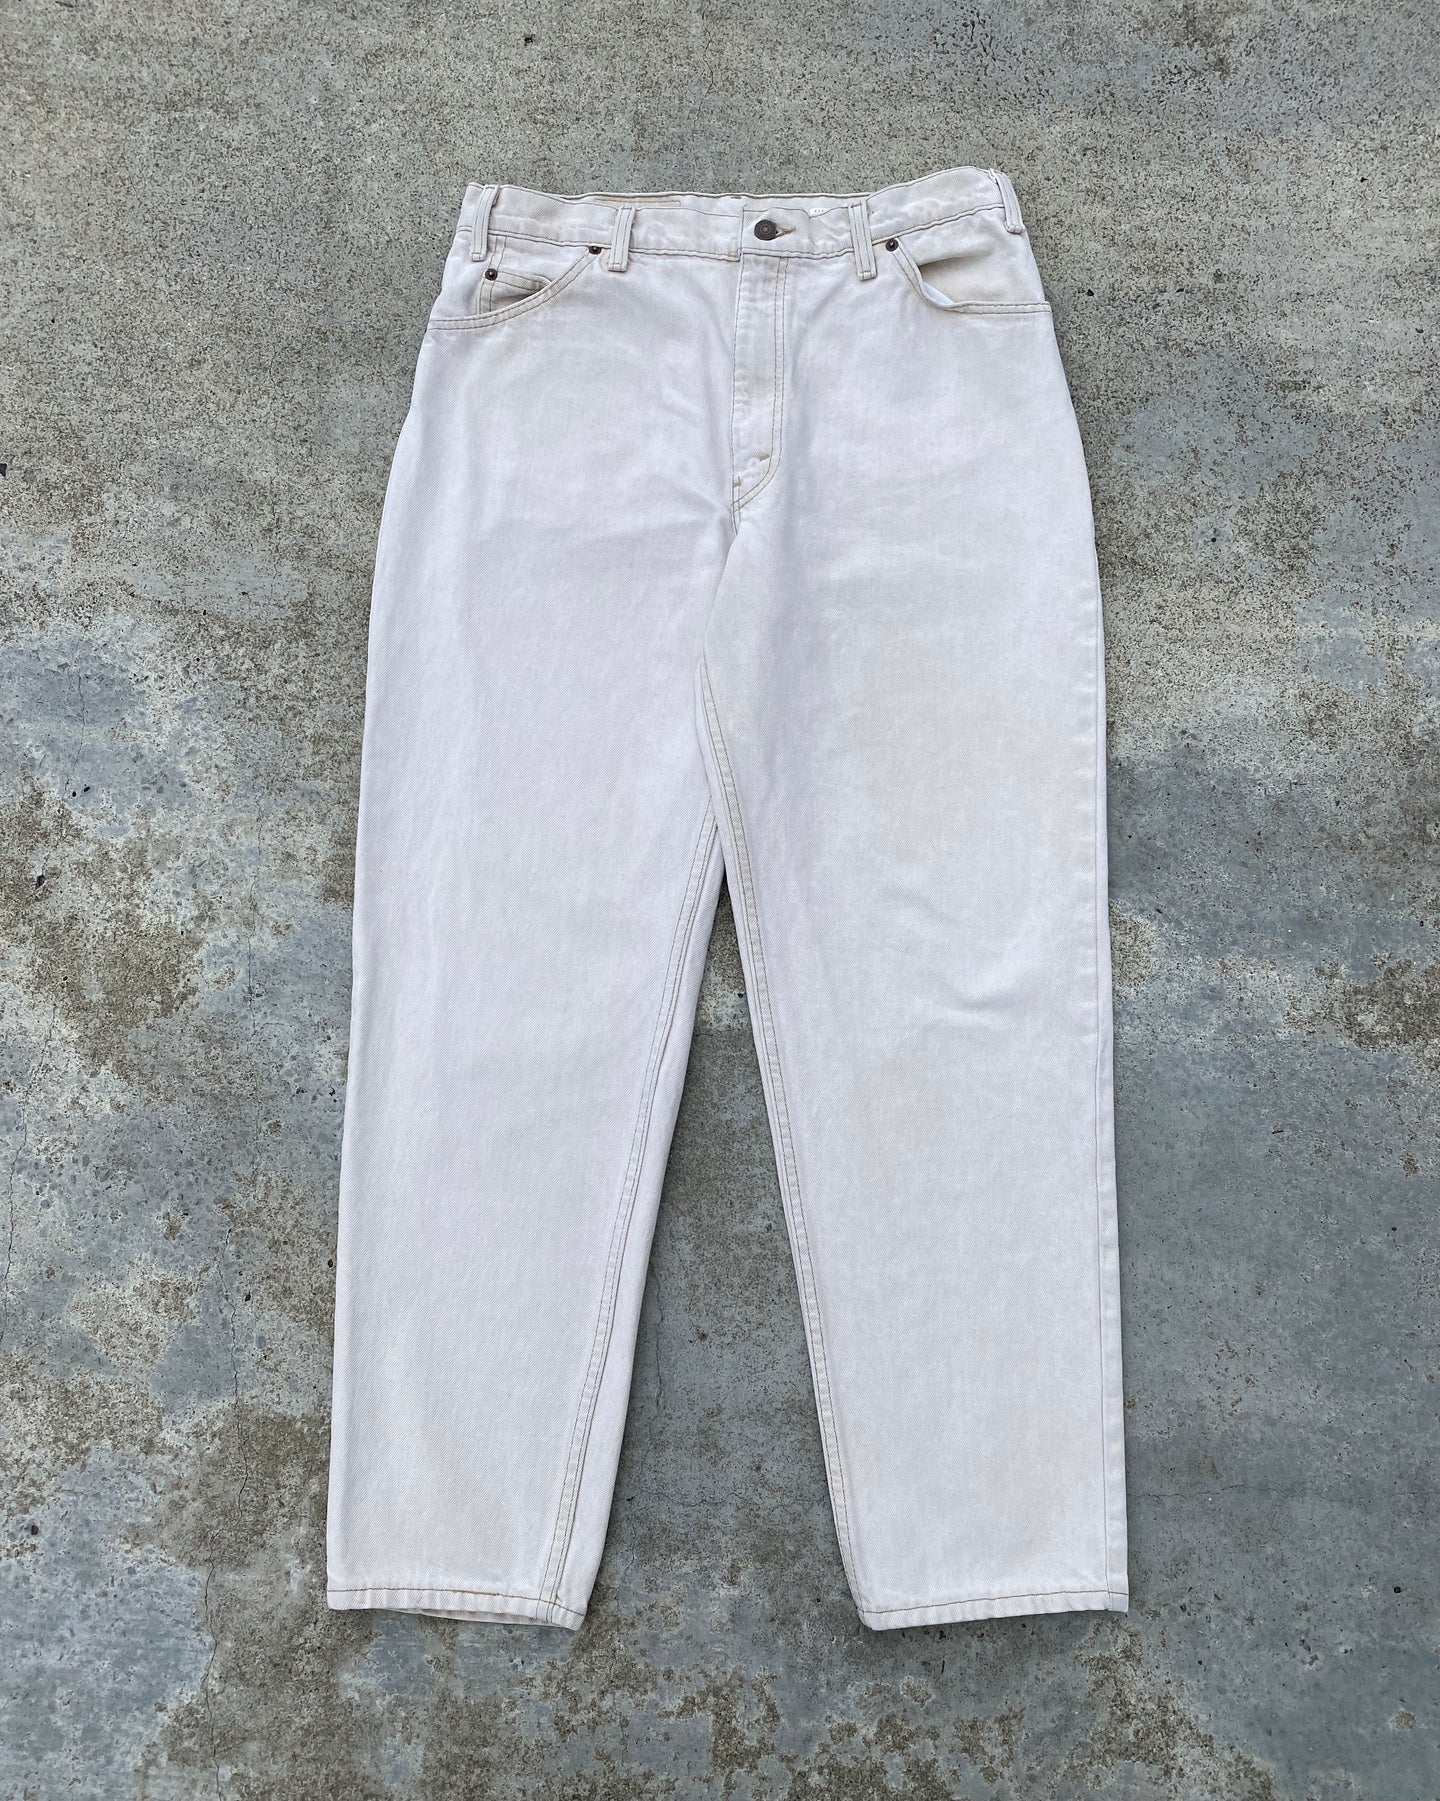 1990s Levi's 550 Orange Tab Cream Jeans - Size 34 x 30